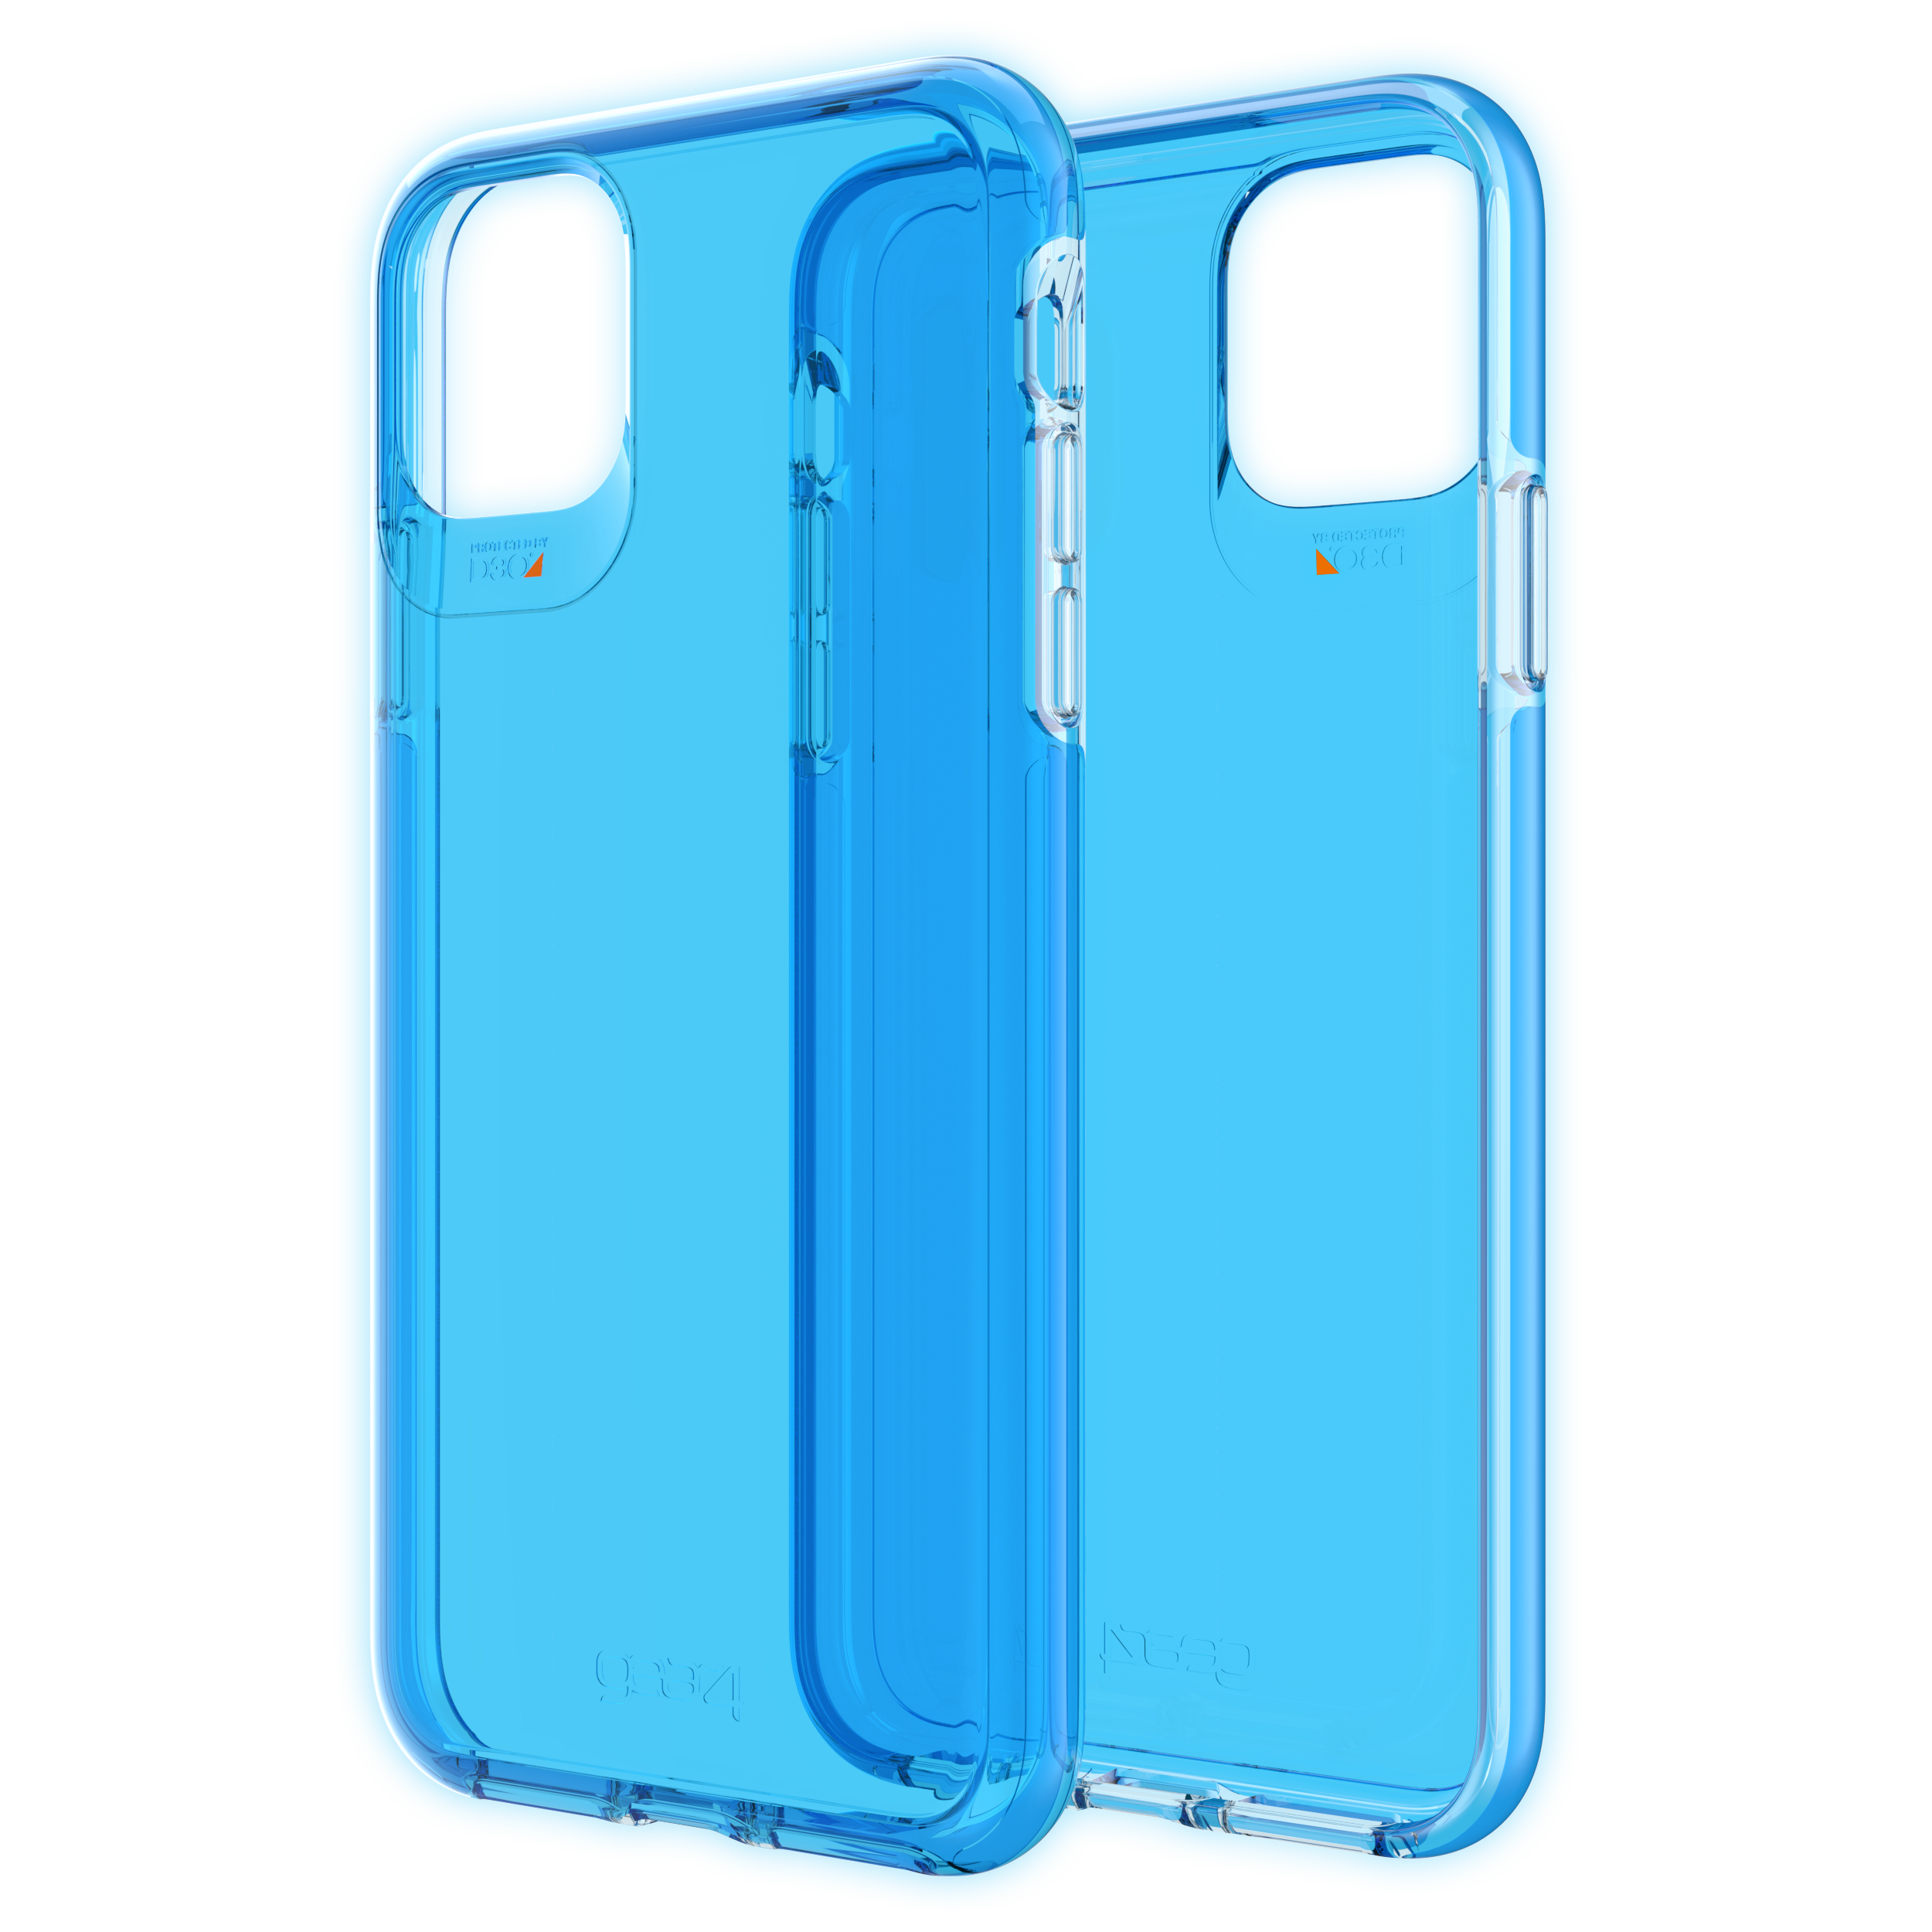 Ốp lưng chống sốc GEAR4 D3O Crystal Palace 4m cho iPhone 11 Pro Max - Hàng Chính Hãng